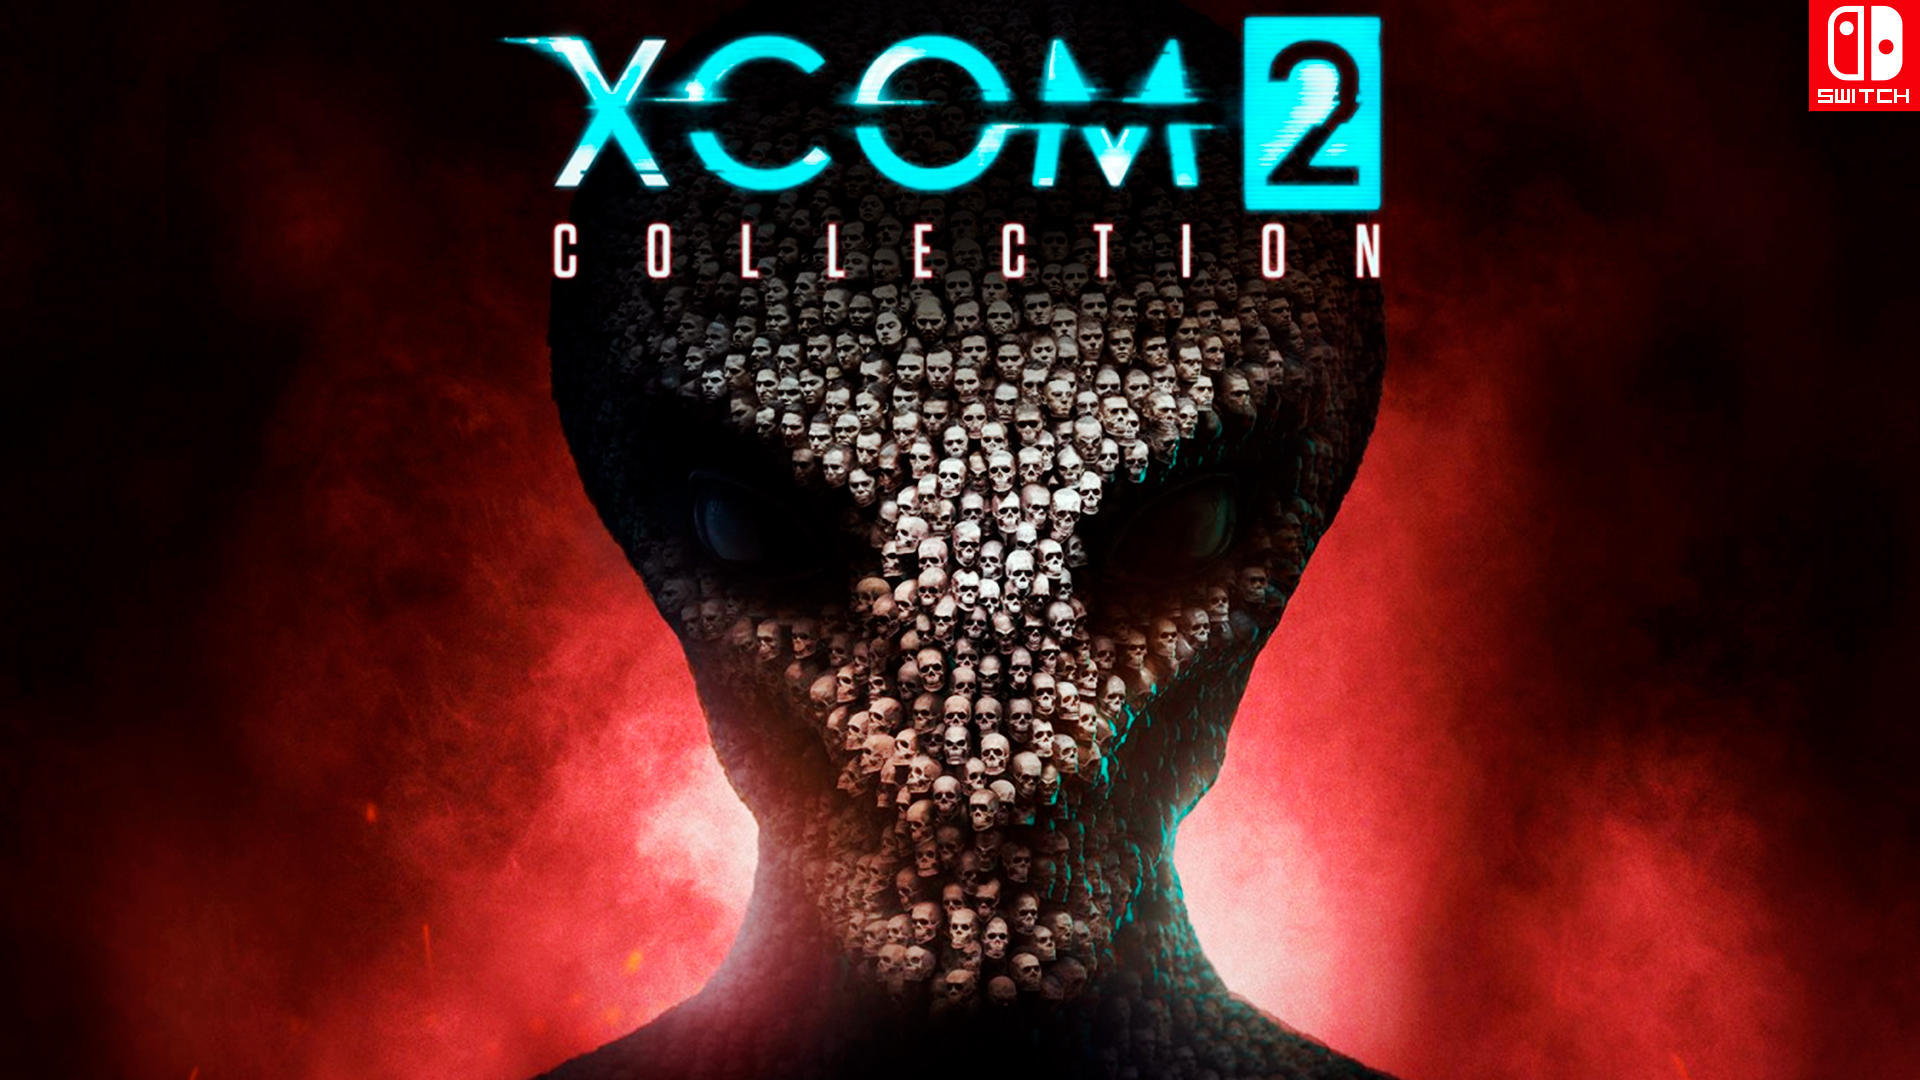 XCOM 2 Collection